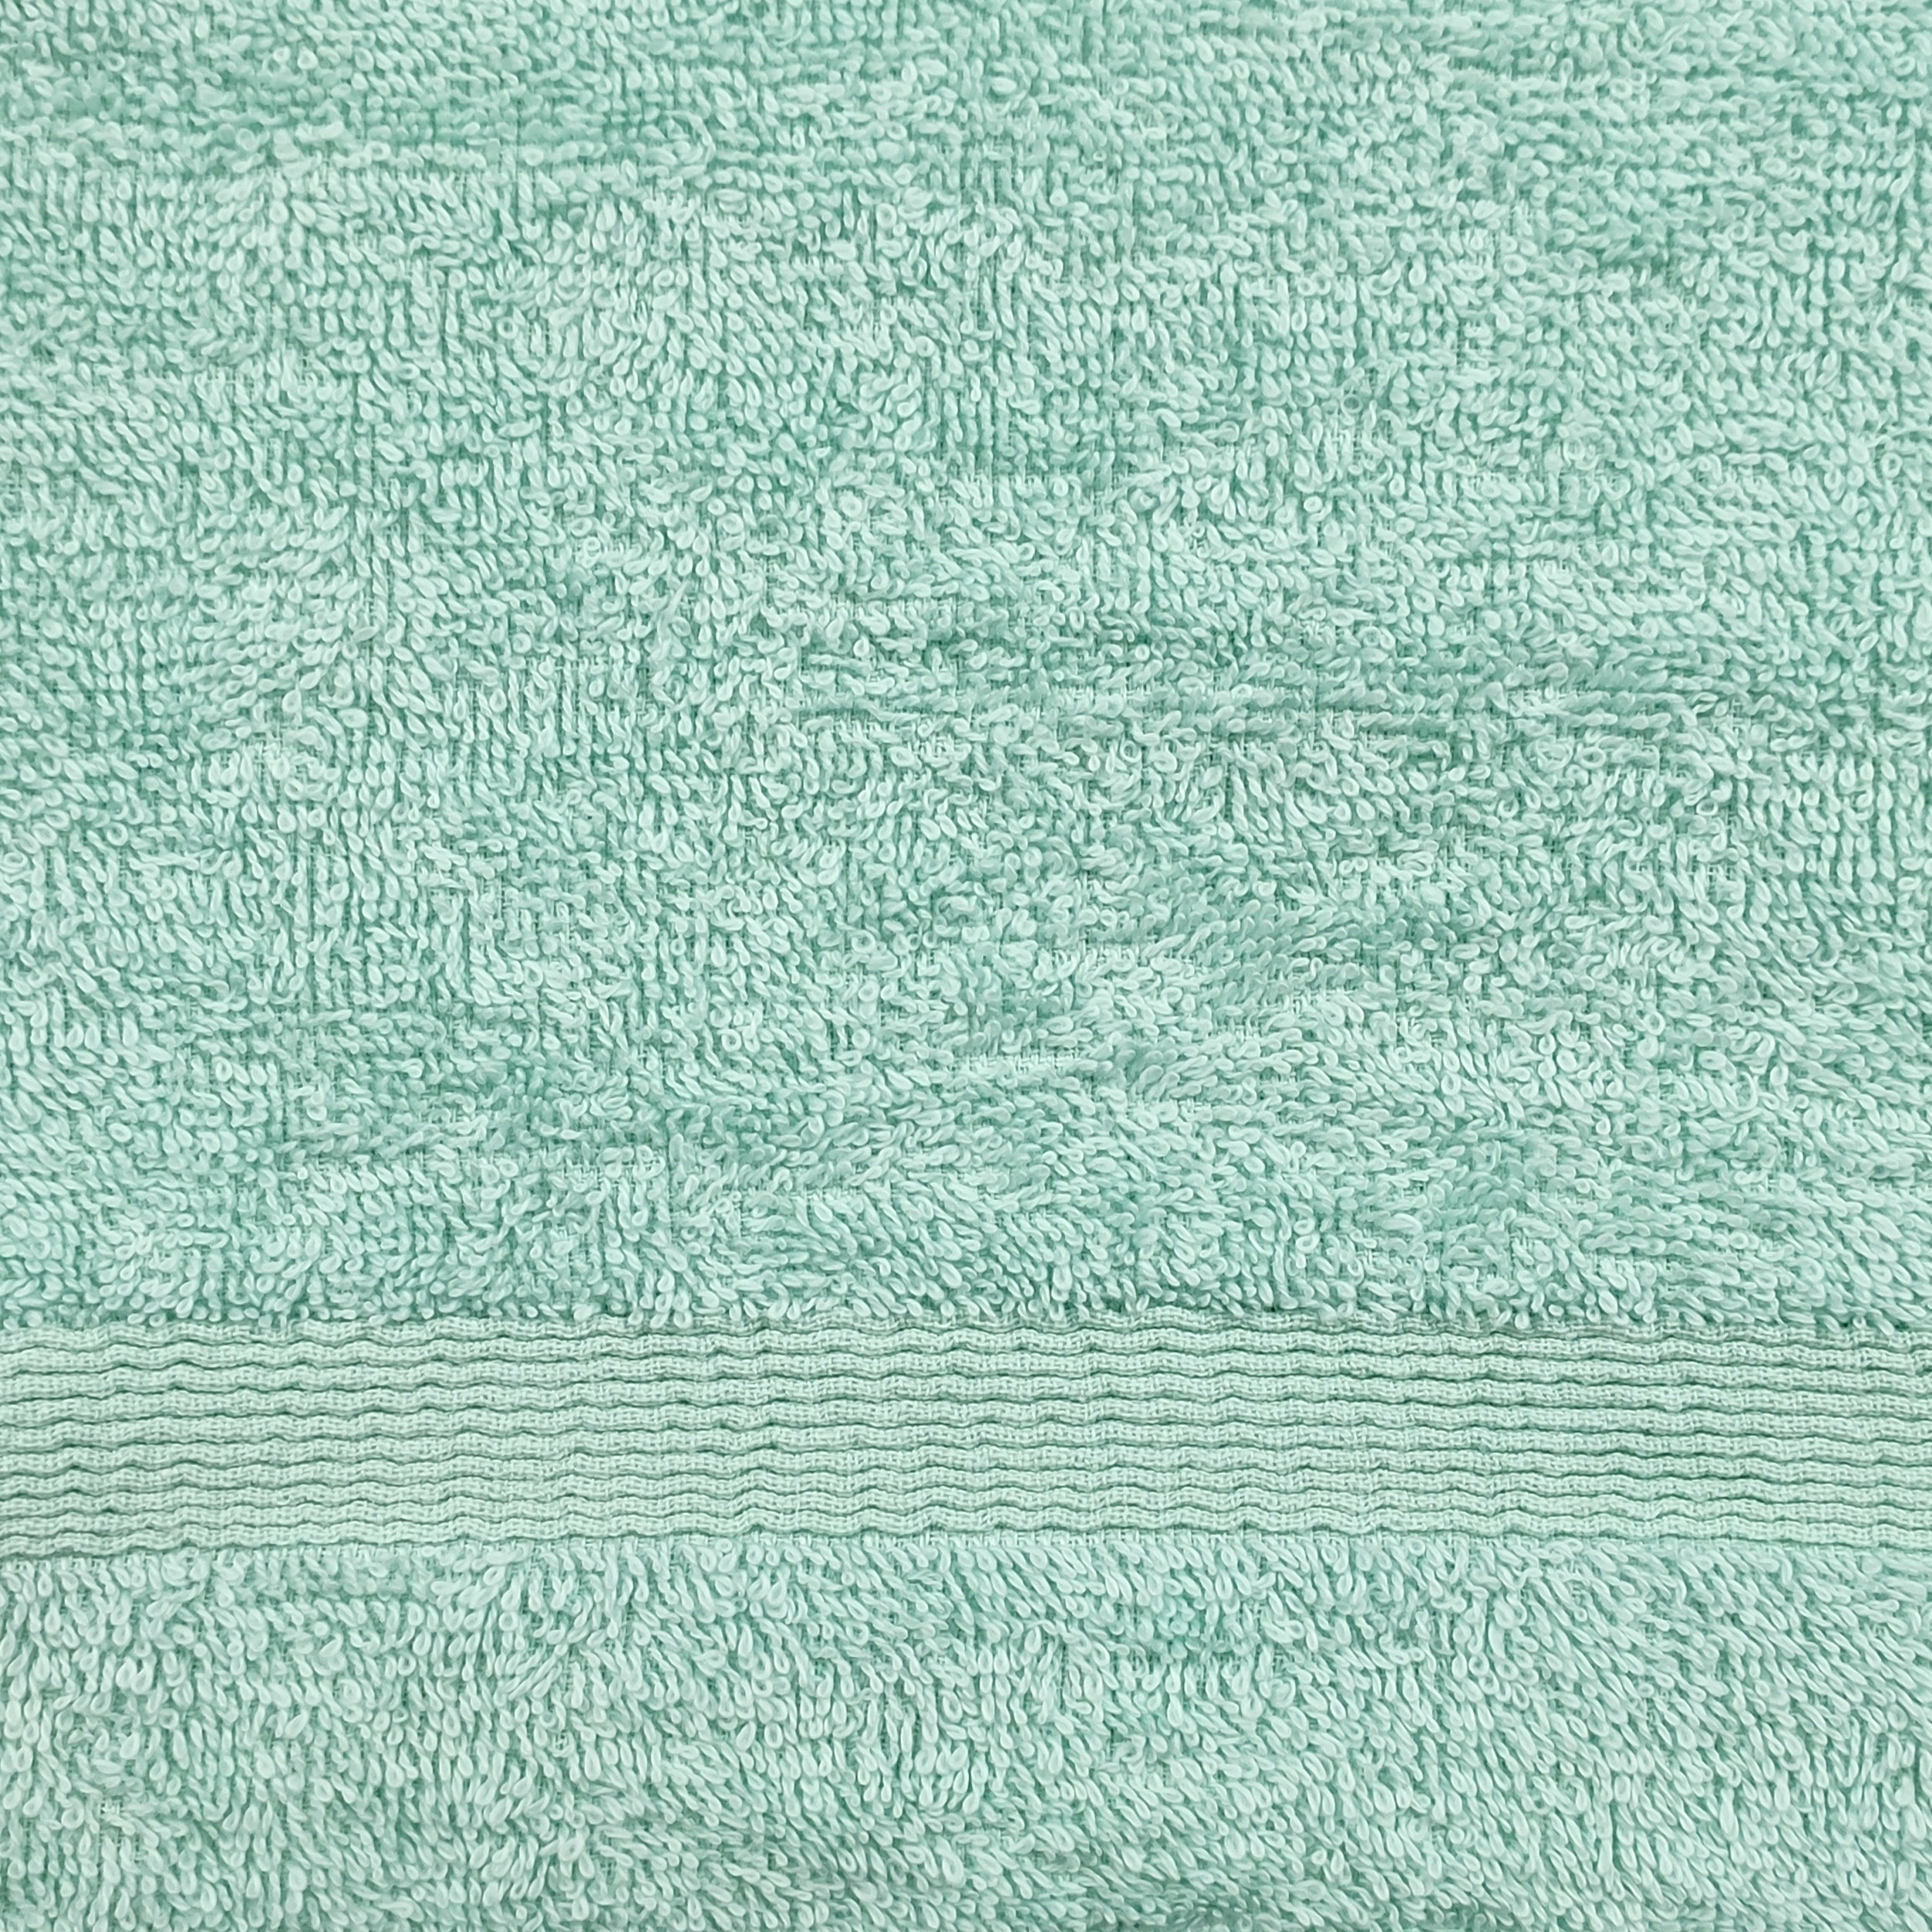 asciugamano verde per la doccia